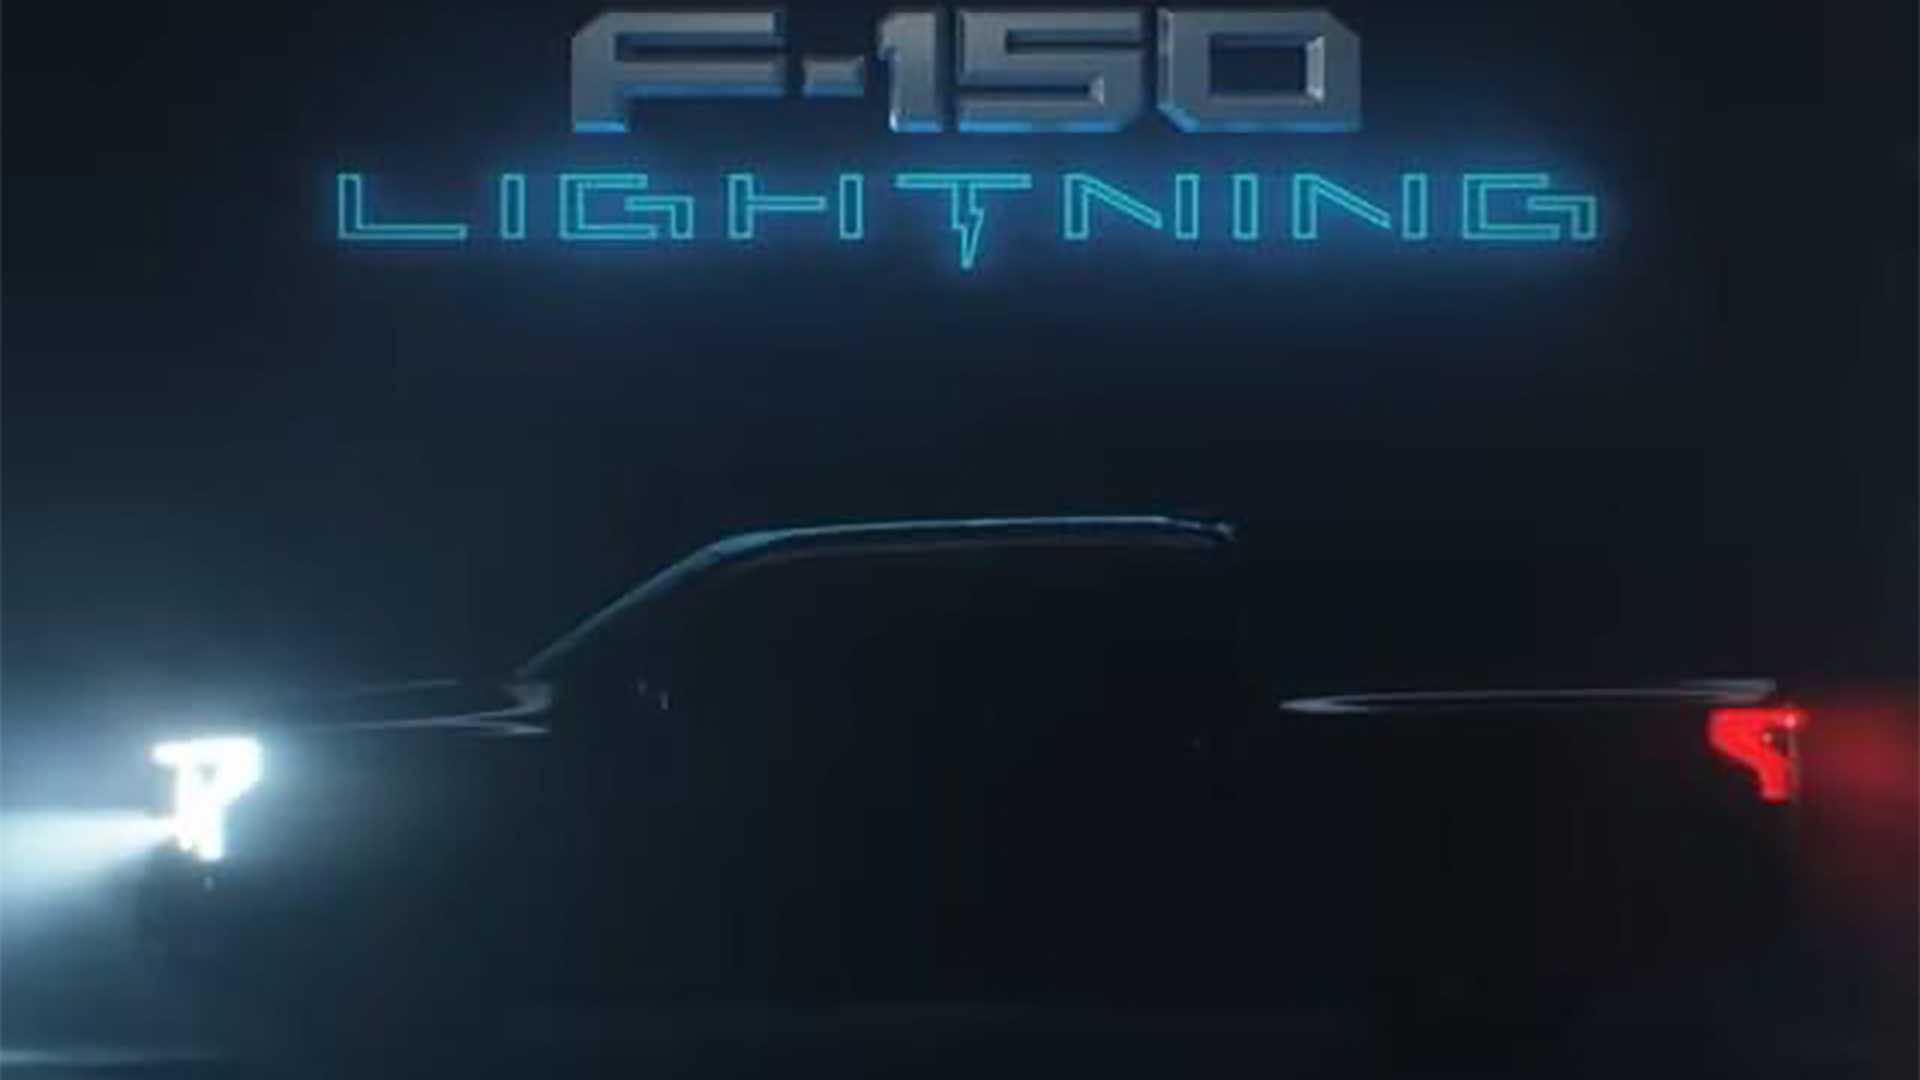 Ford F 150 Lightning Full Profile Revealed In Instagram Ad